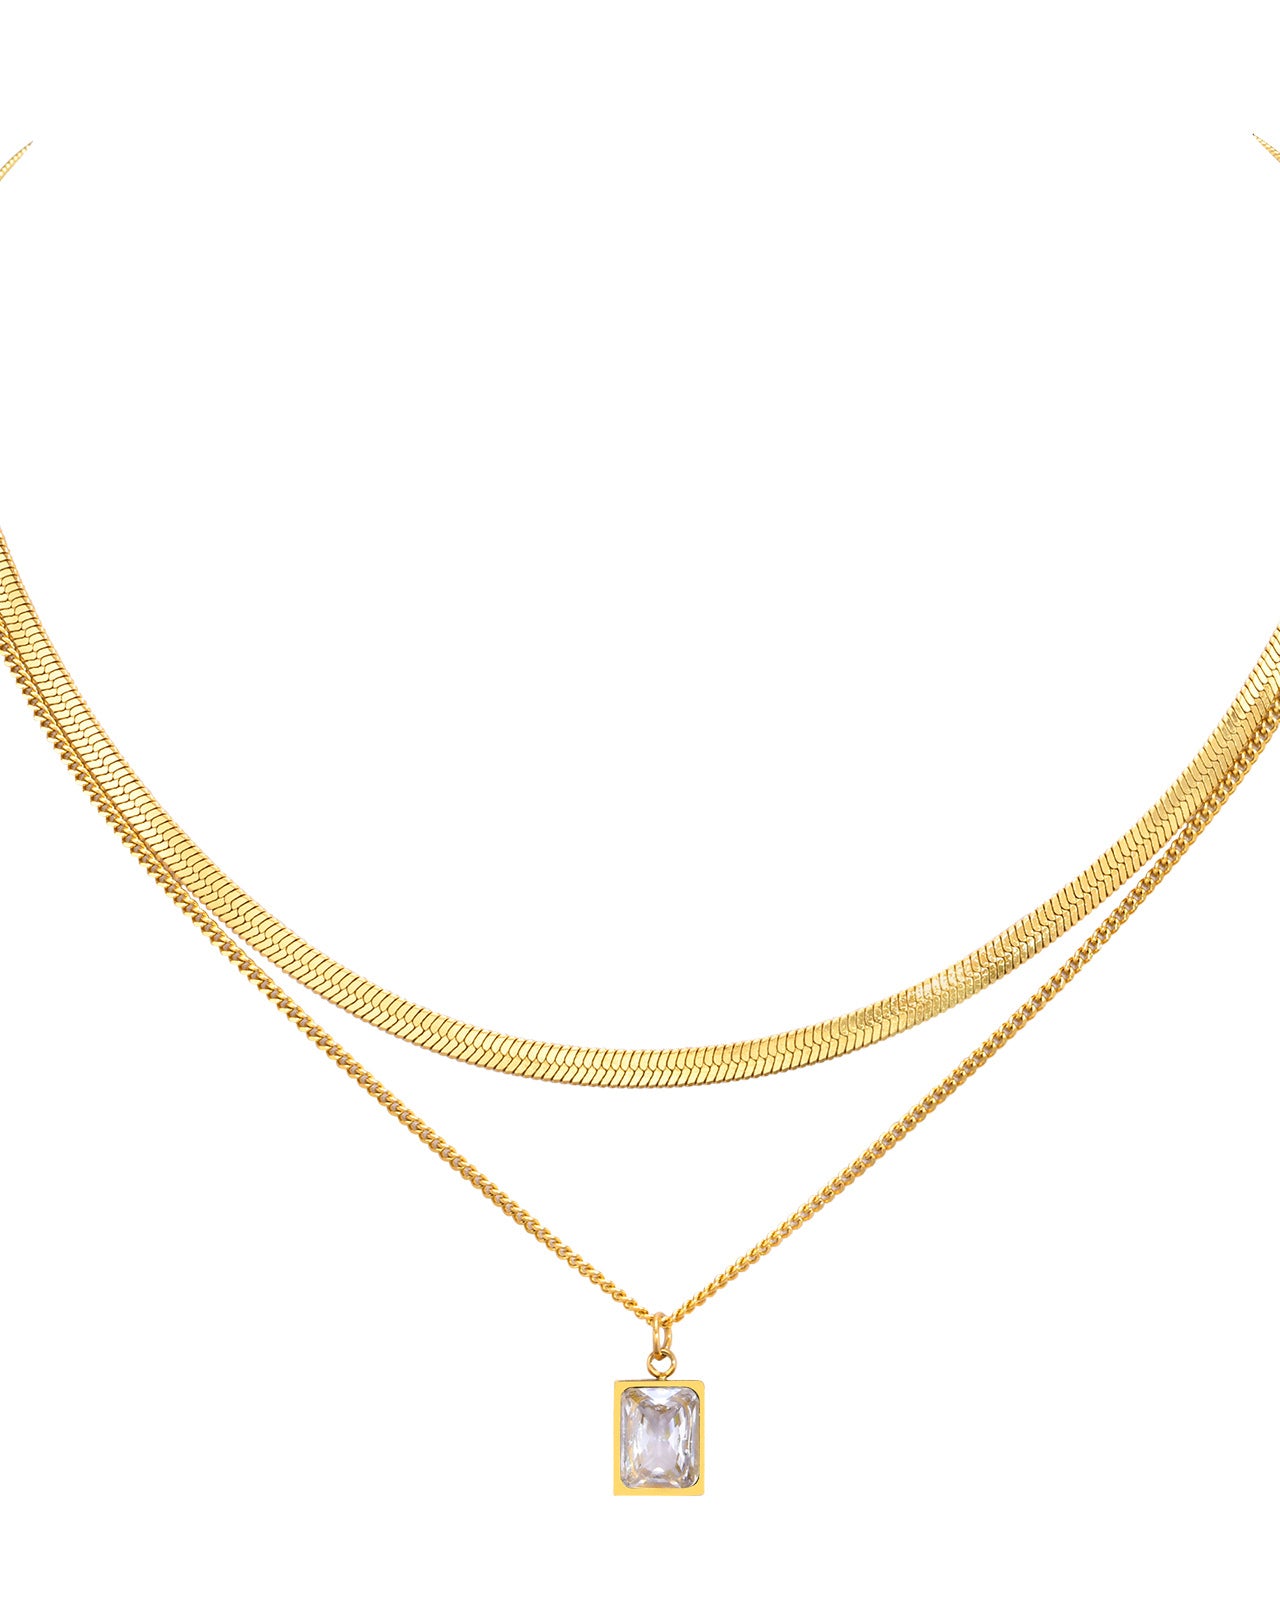 Zirkonia Layer Halskette | 38cm + 41cm Halskette | AAA Zirkonia Stein - Ketten - CARDORI